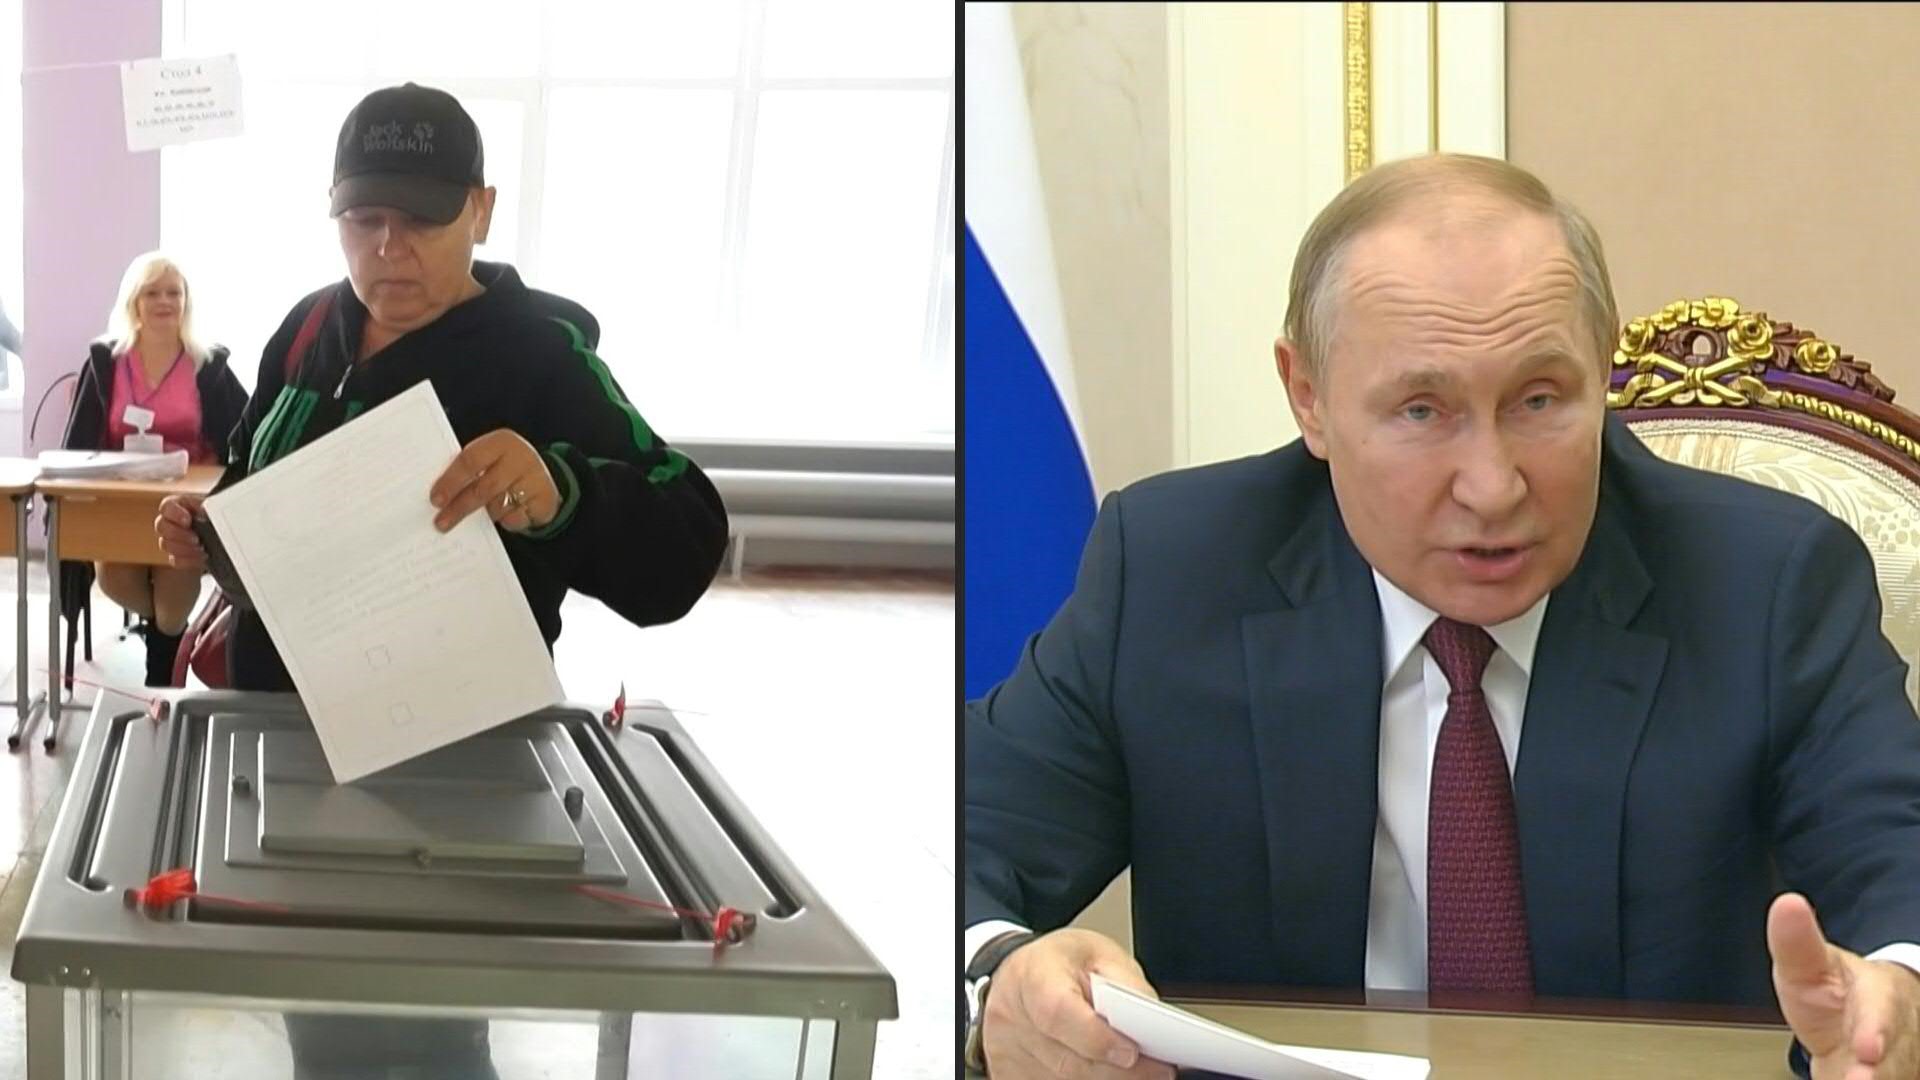 El jefe del régimen de Moscú, Vladimir Putin, amenaza al mundo con un ataque nuclear si hay ataques al territorio ruso. Por eso convocó a referendos para anexar el Donbás (AFP)